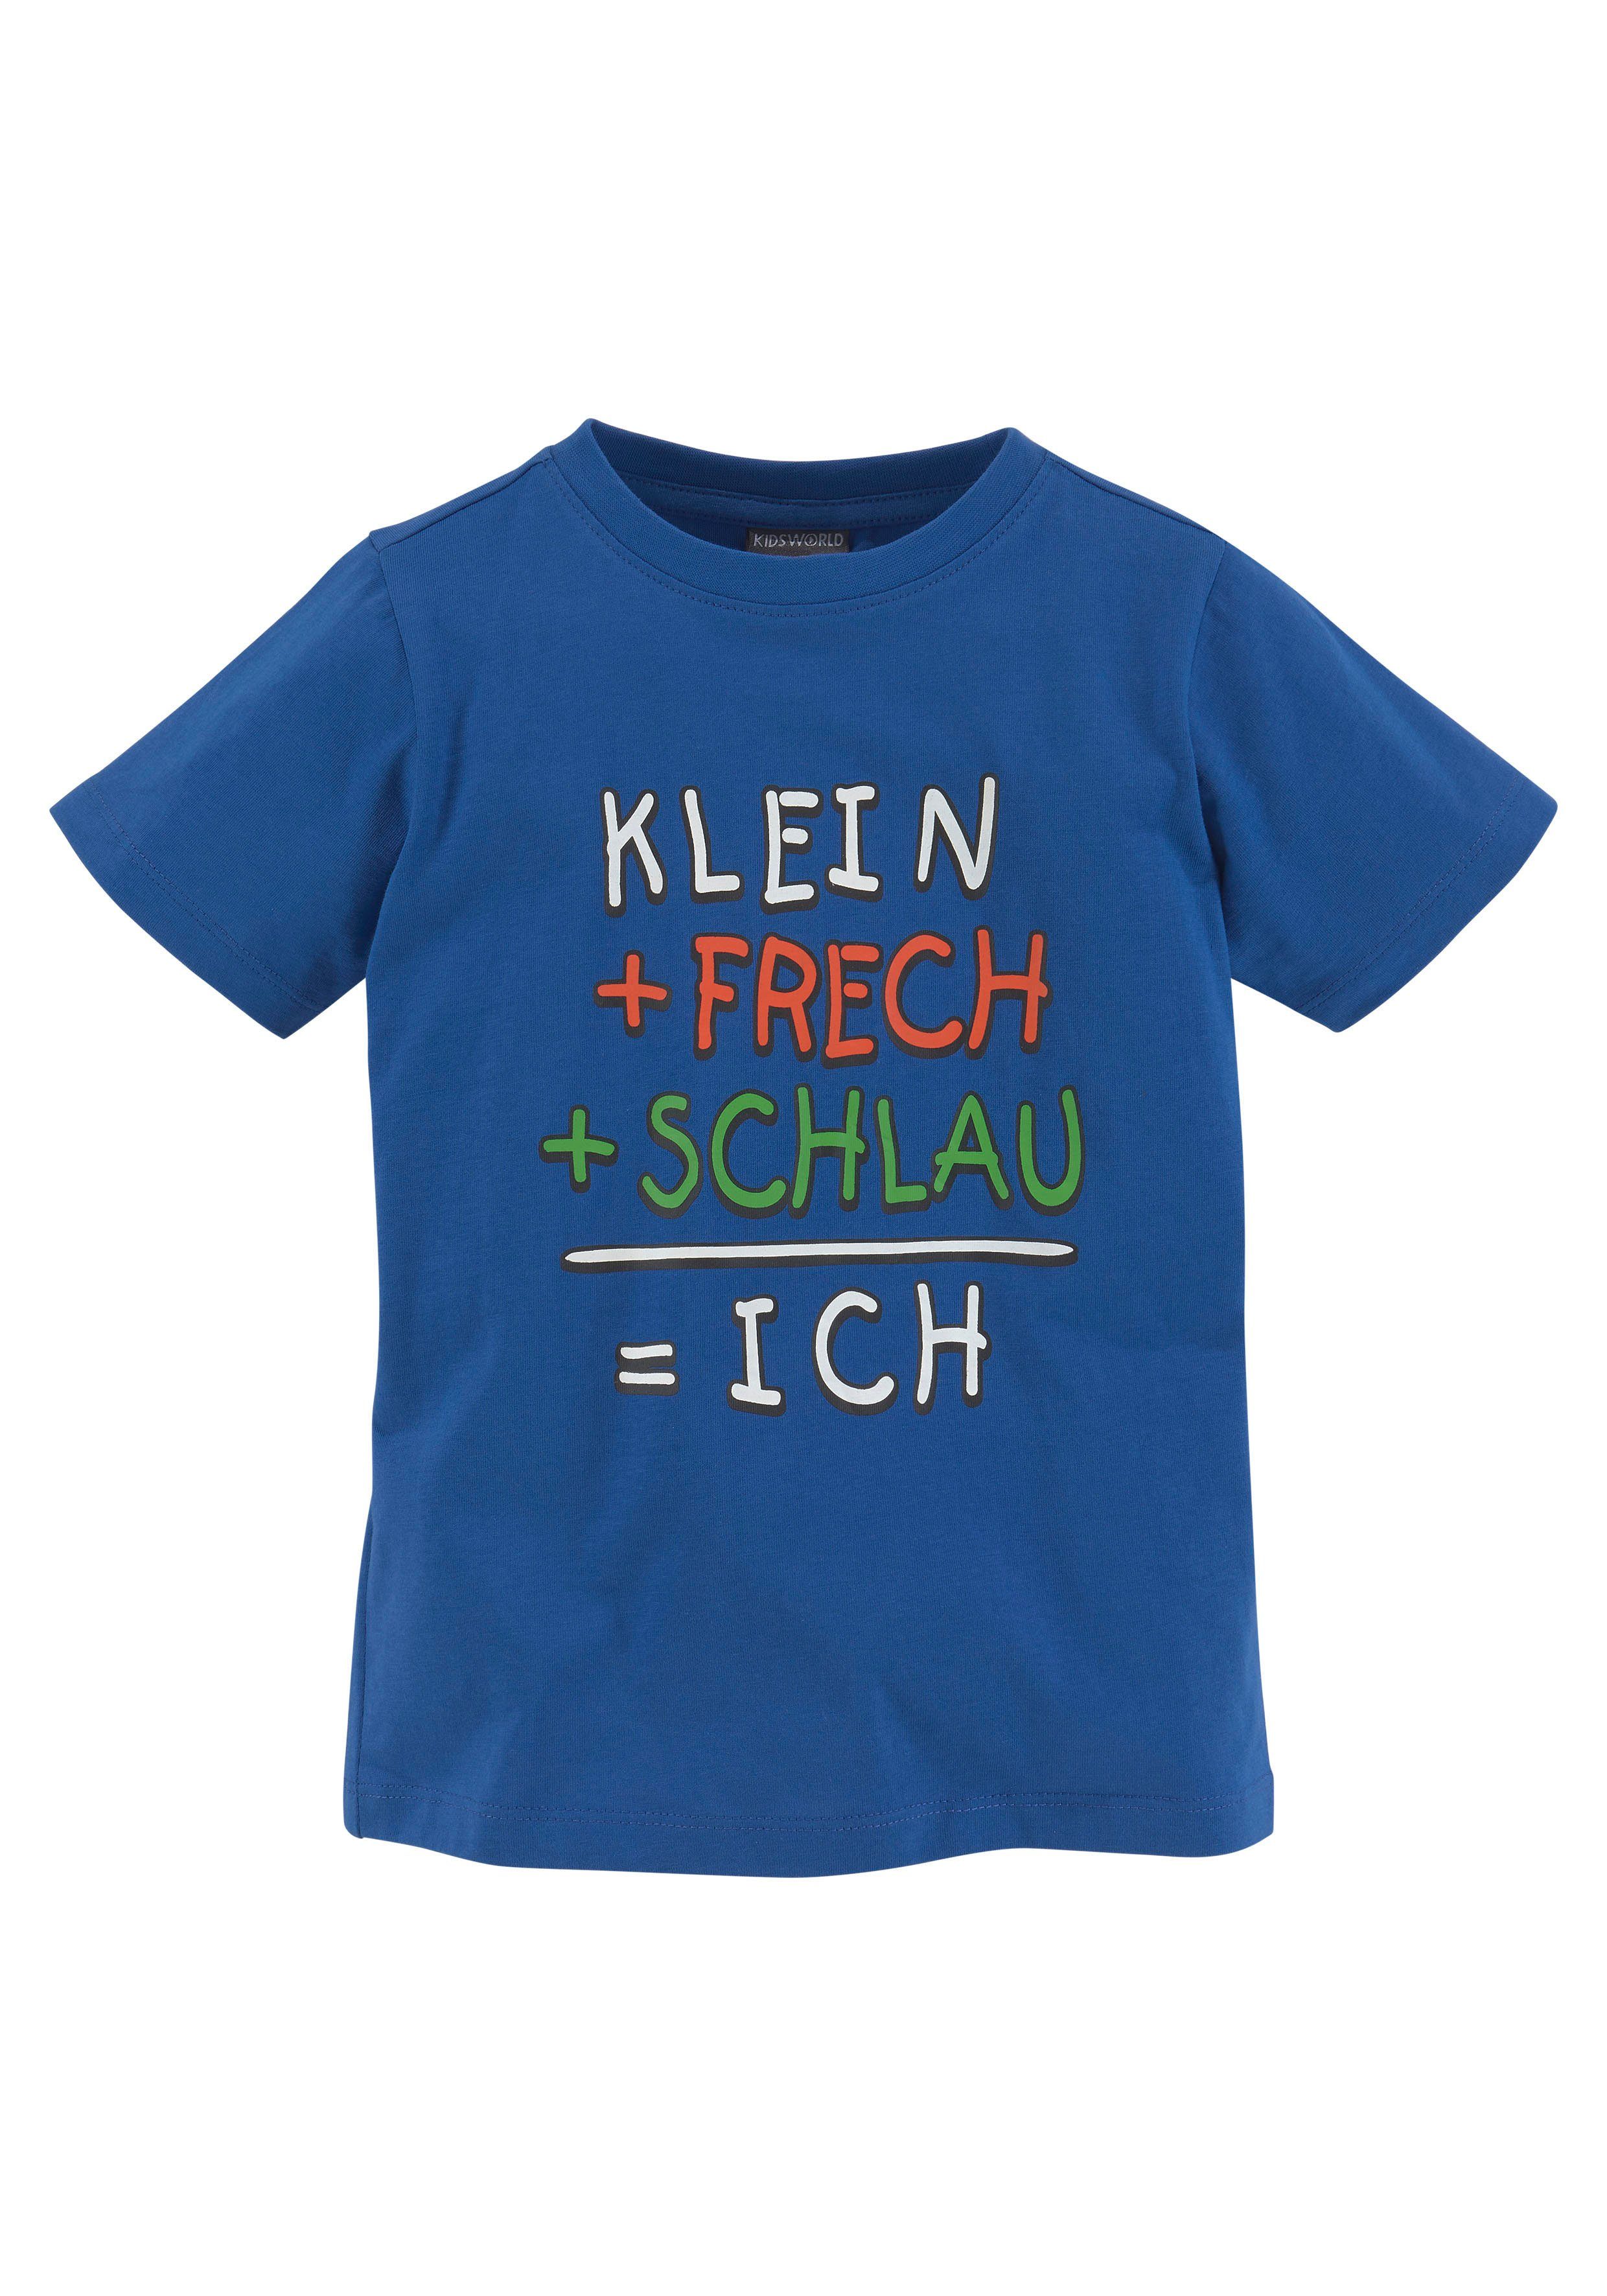 KIDSWORLD T-shirt | online bij OTTO KLEIN+FRECH+SCHLAU...